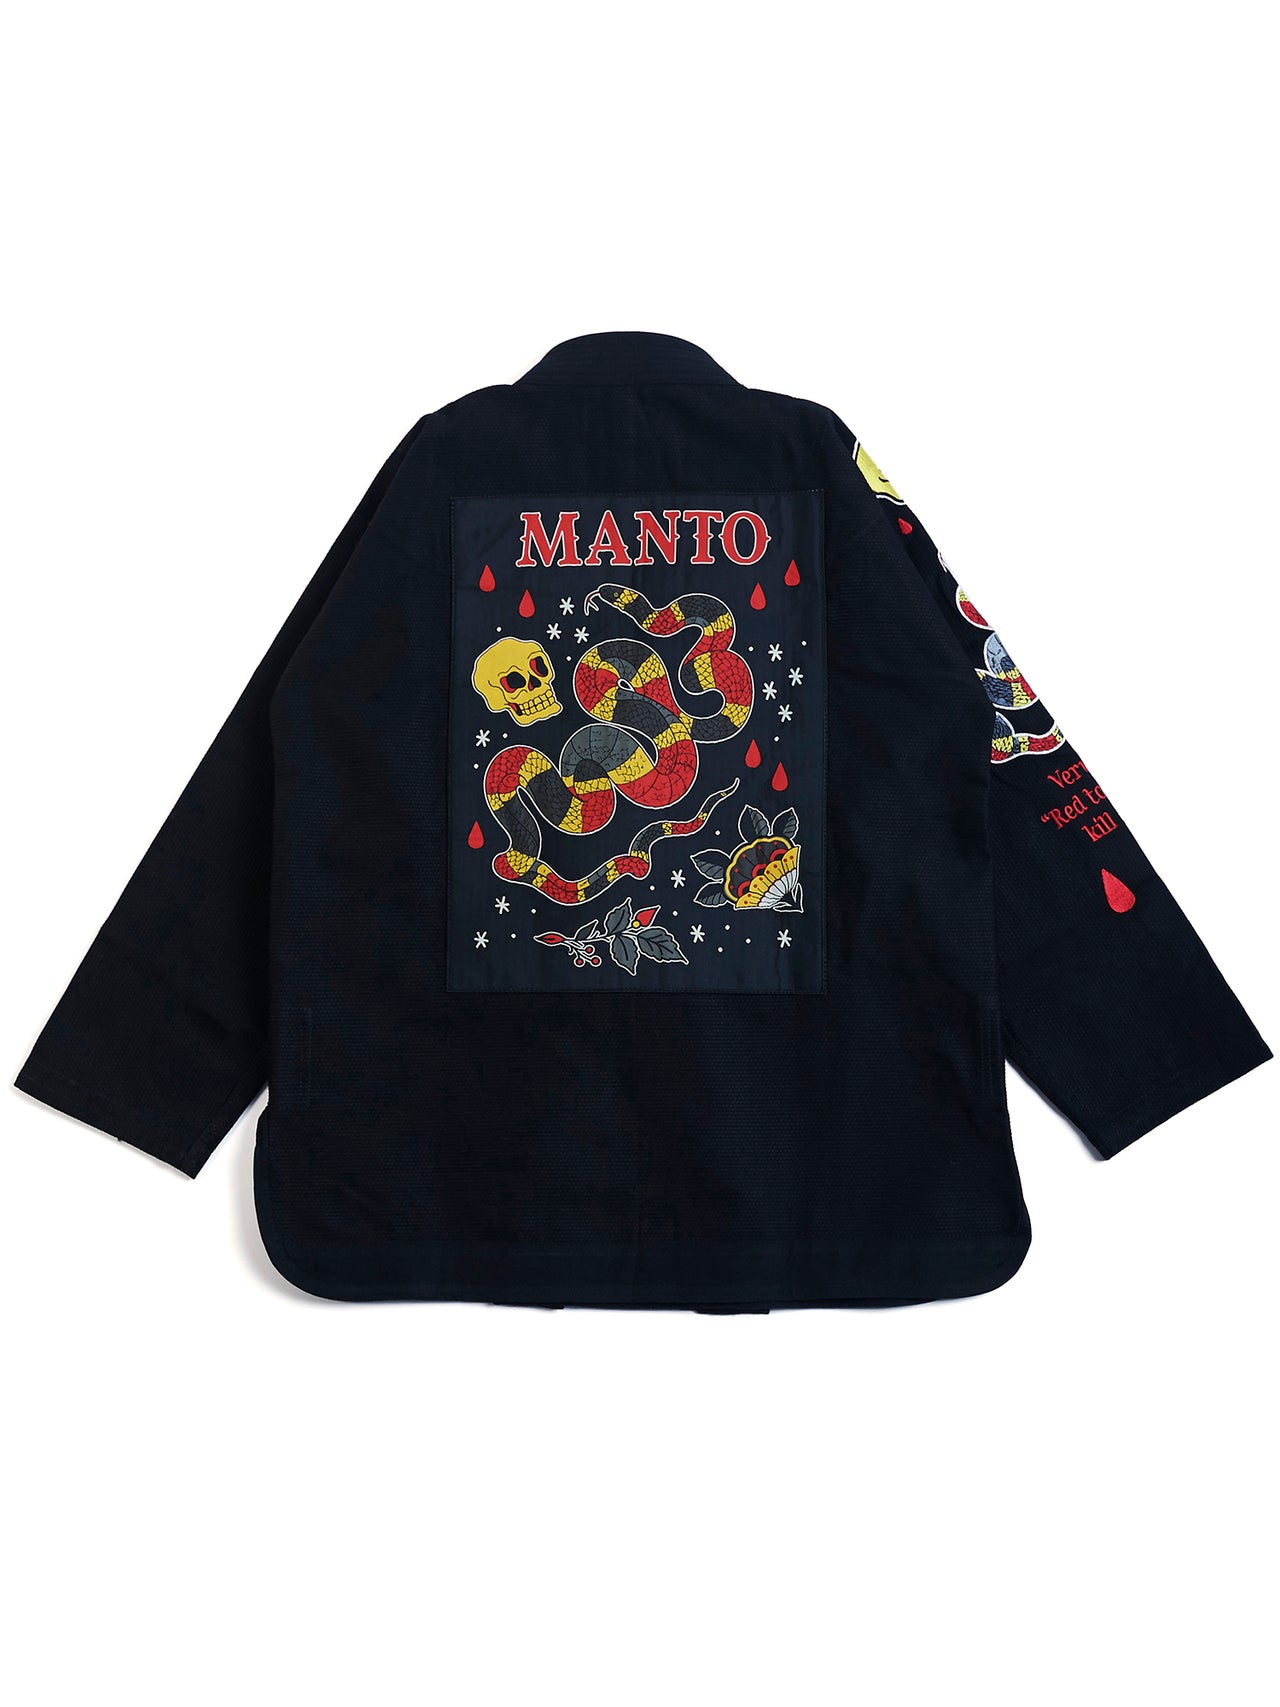 【お取寄せ商品】Manto / "CORAL" 柔術衣 Black